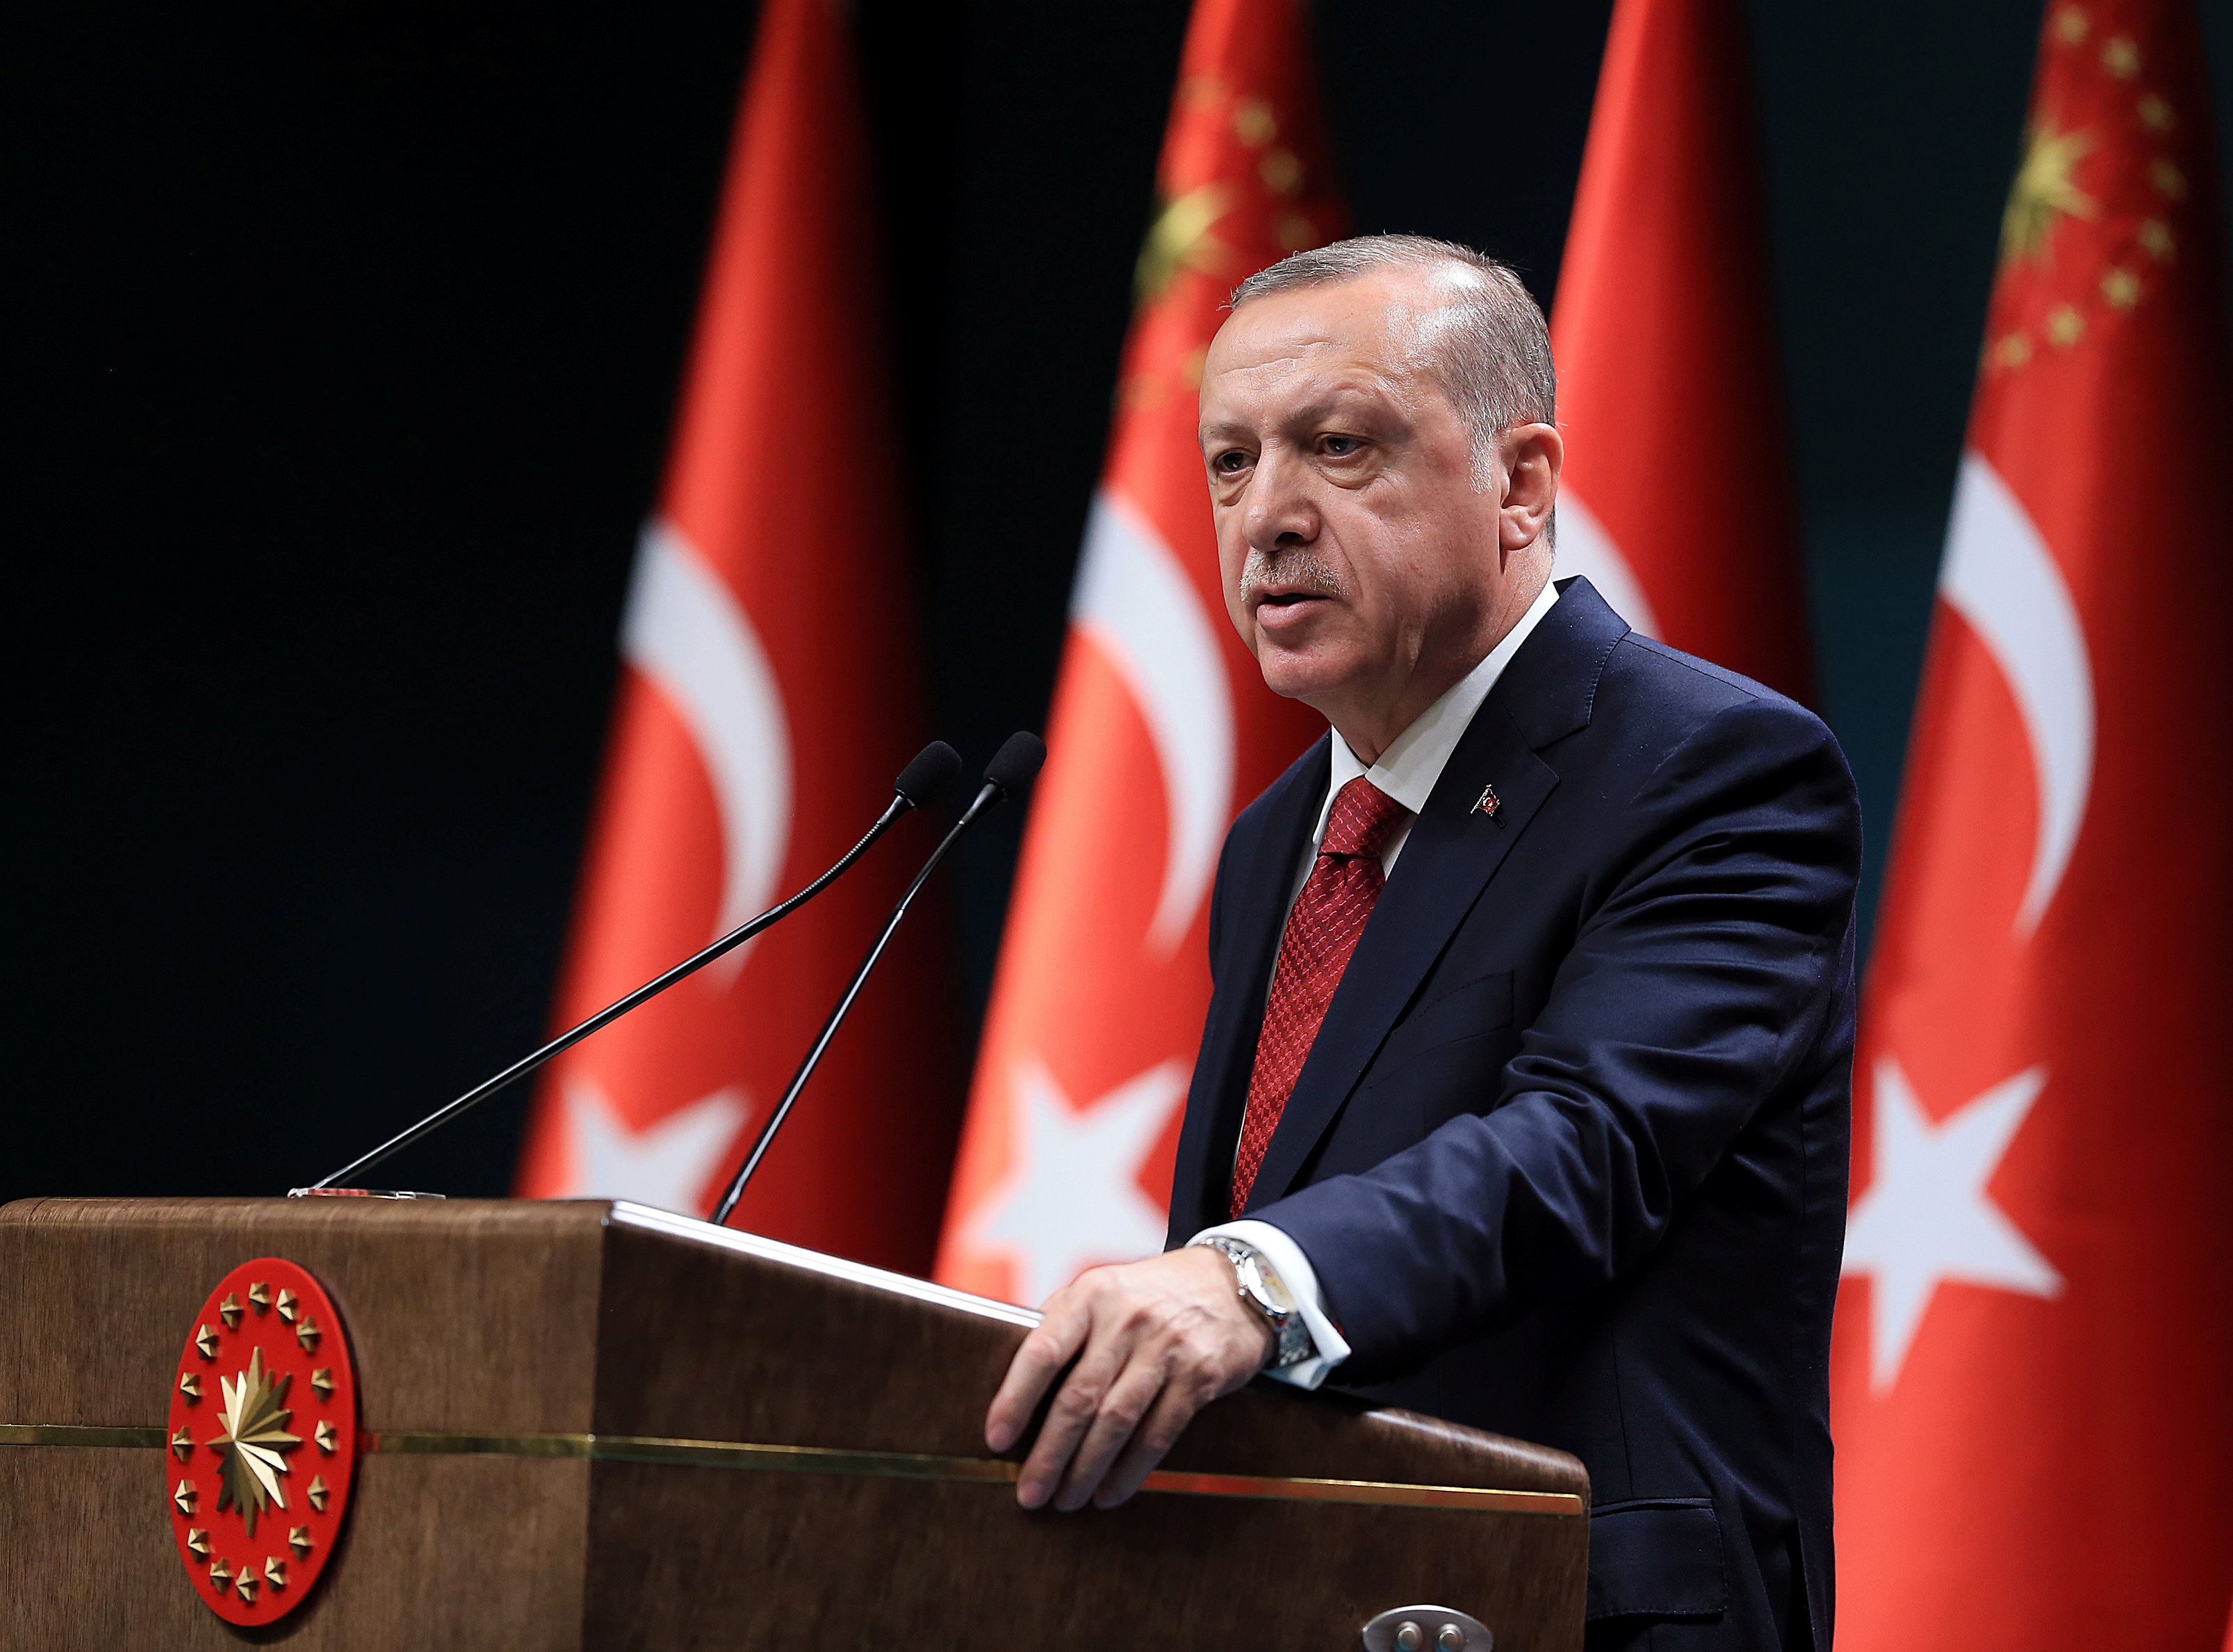 Эрдоган обратился к Путину и назвал условие Турции по Нагорному Карабаху